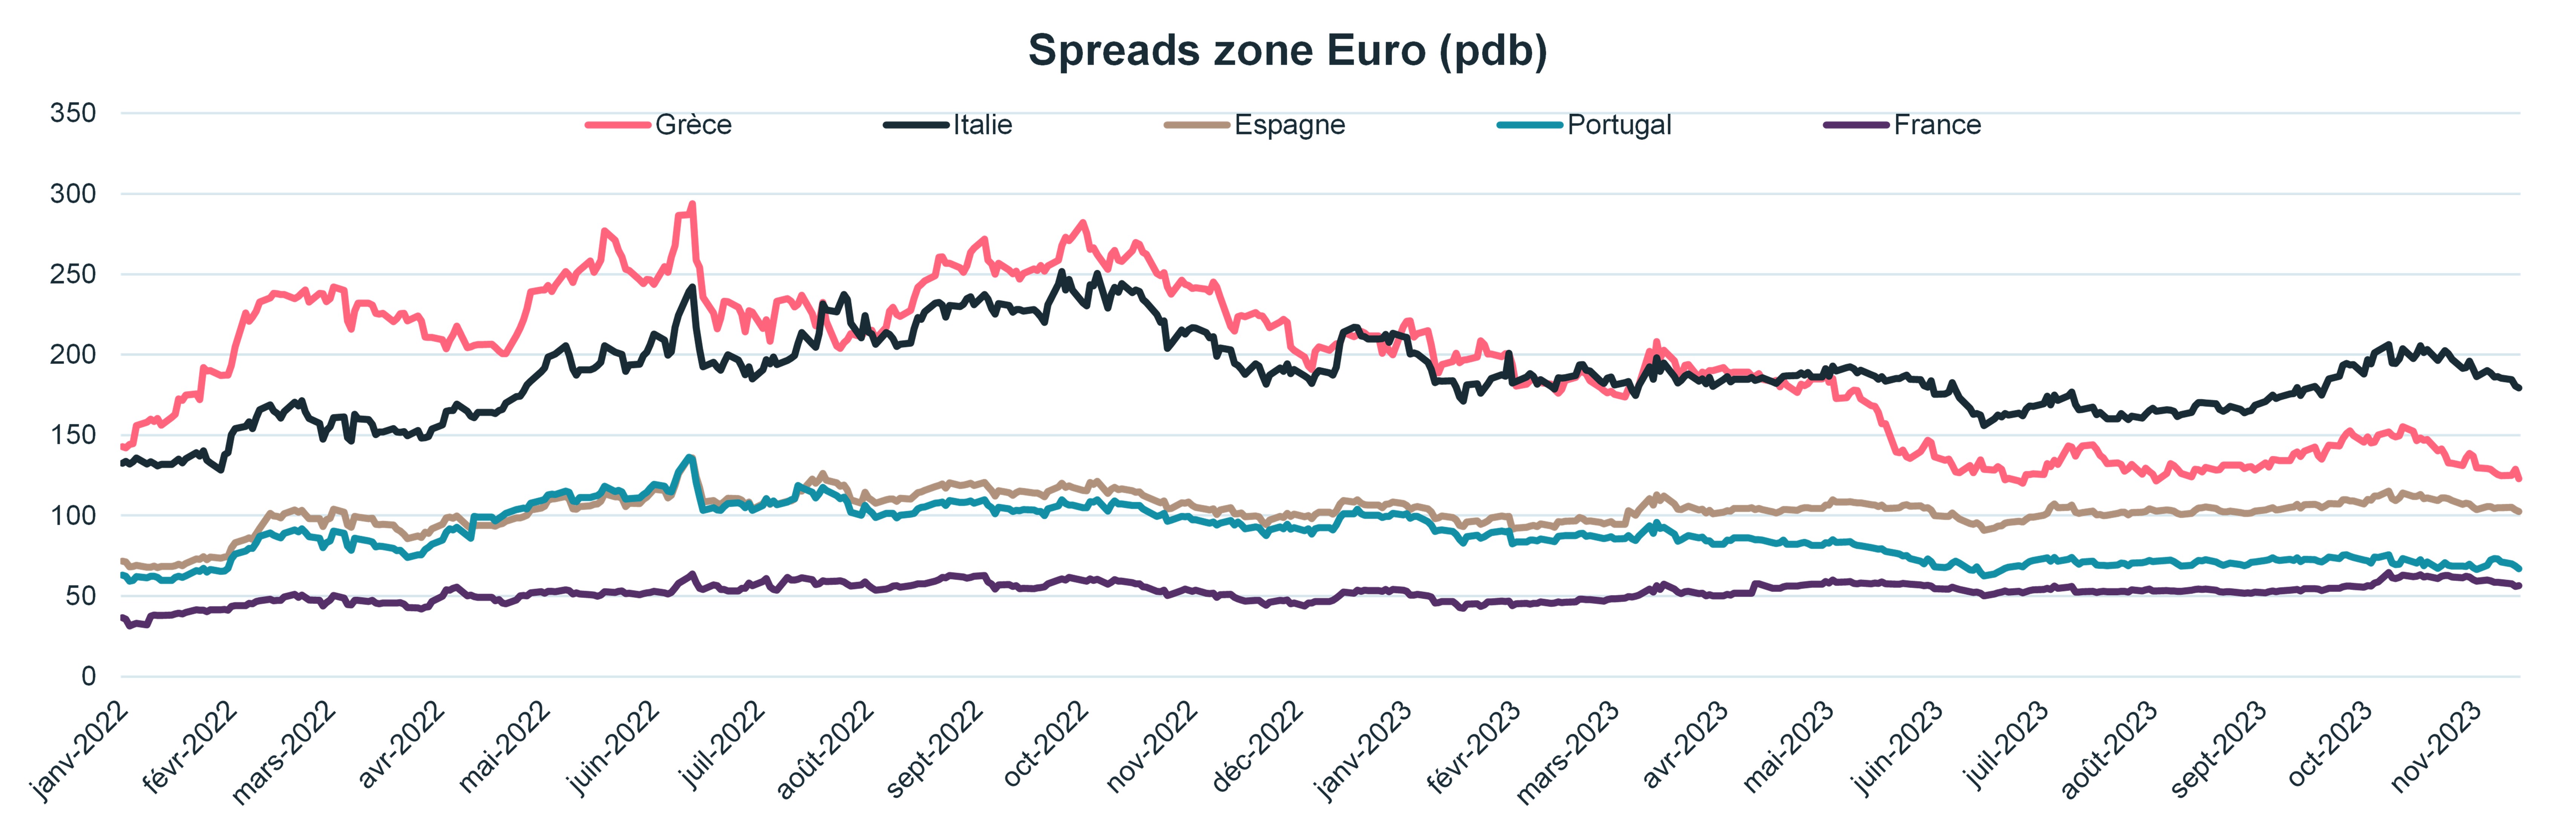 spreads-zone-euro-pdb